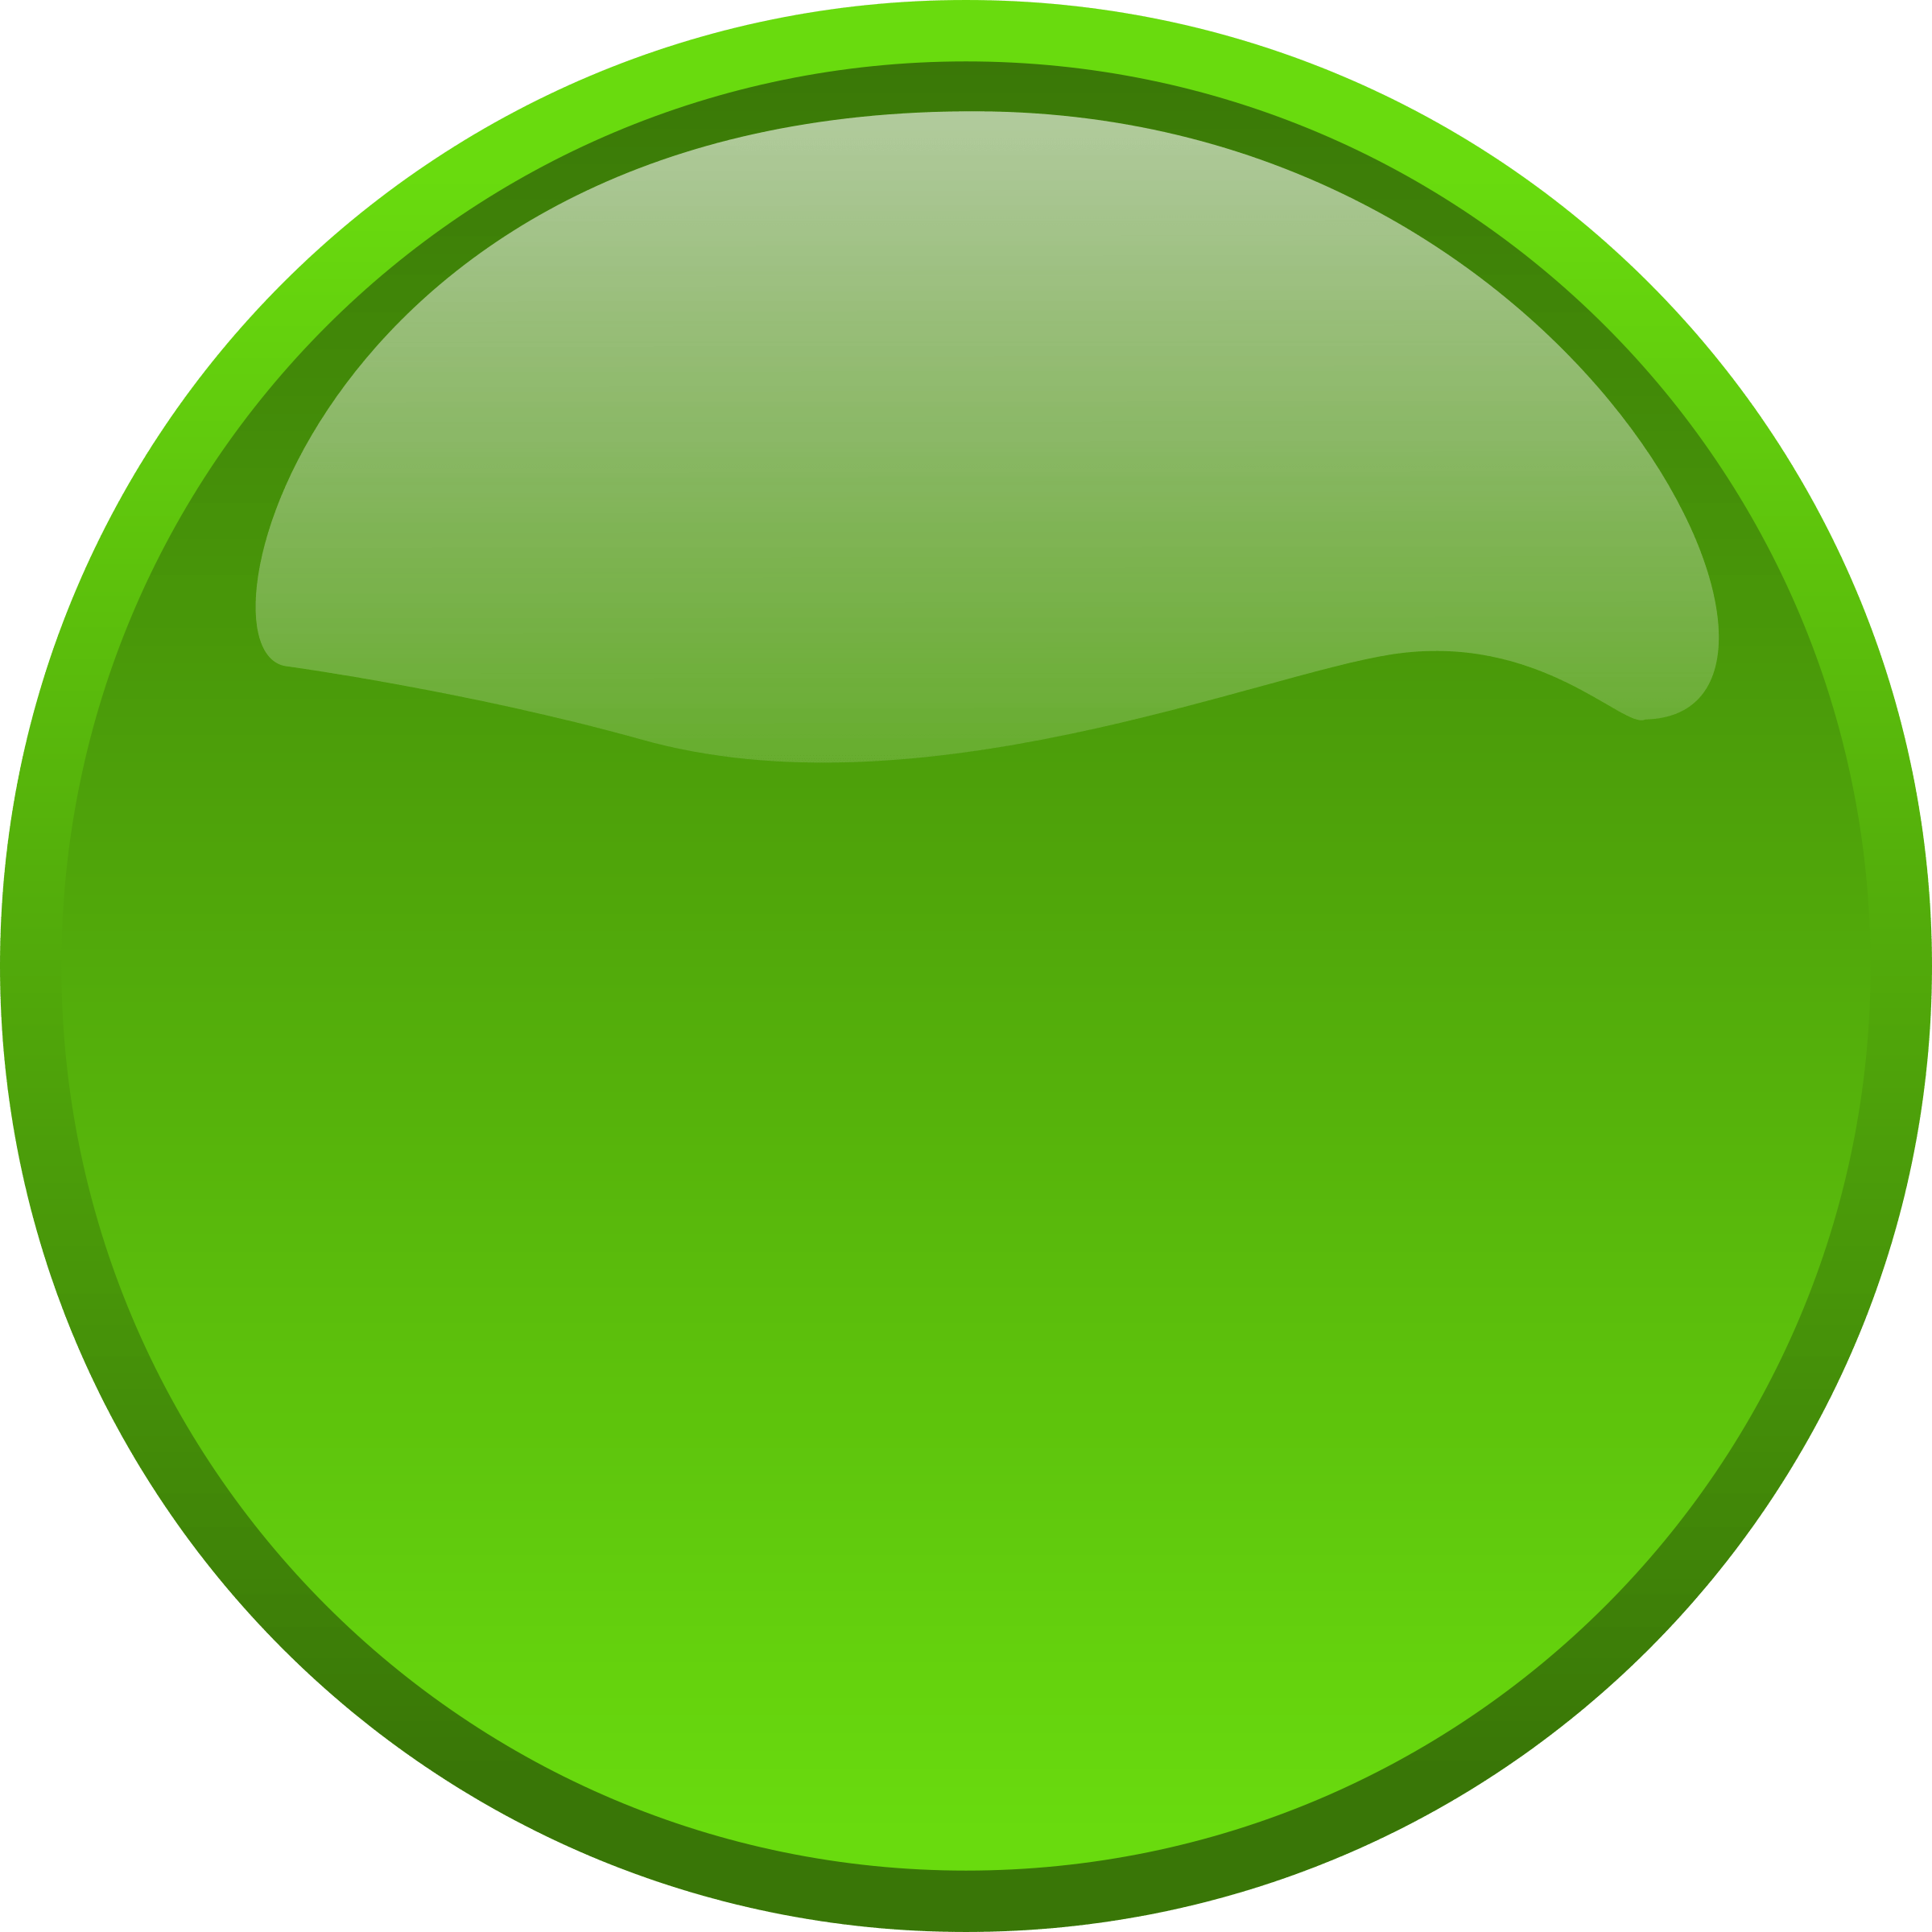 red-and-green-circle-logo-logodix